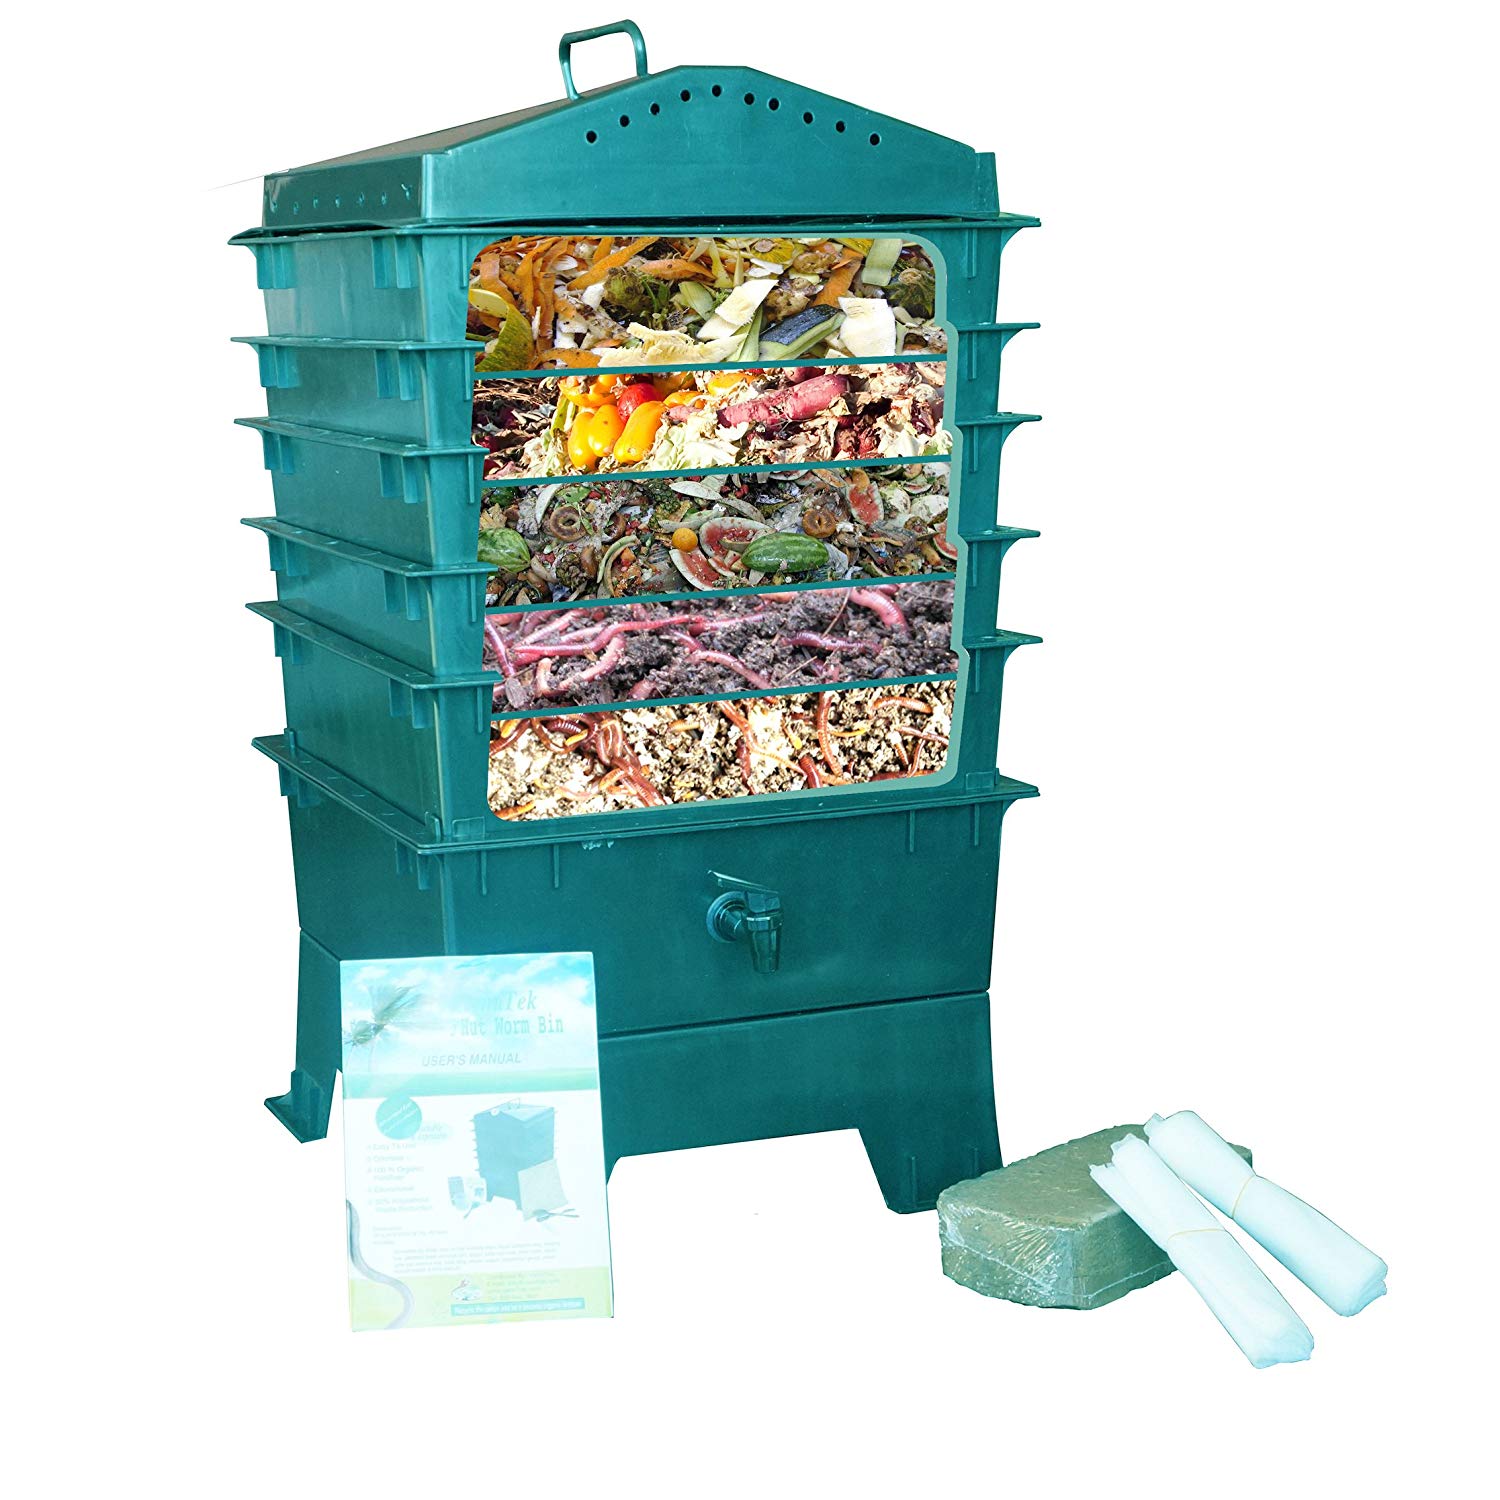 VermiHut 5-Tray Worm Compost Bin, Dark Green